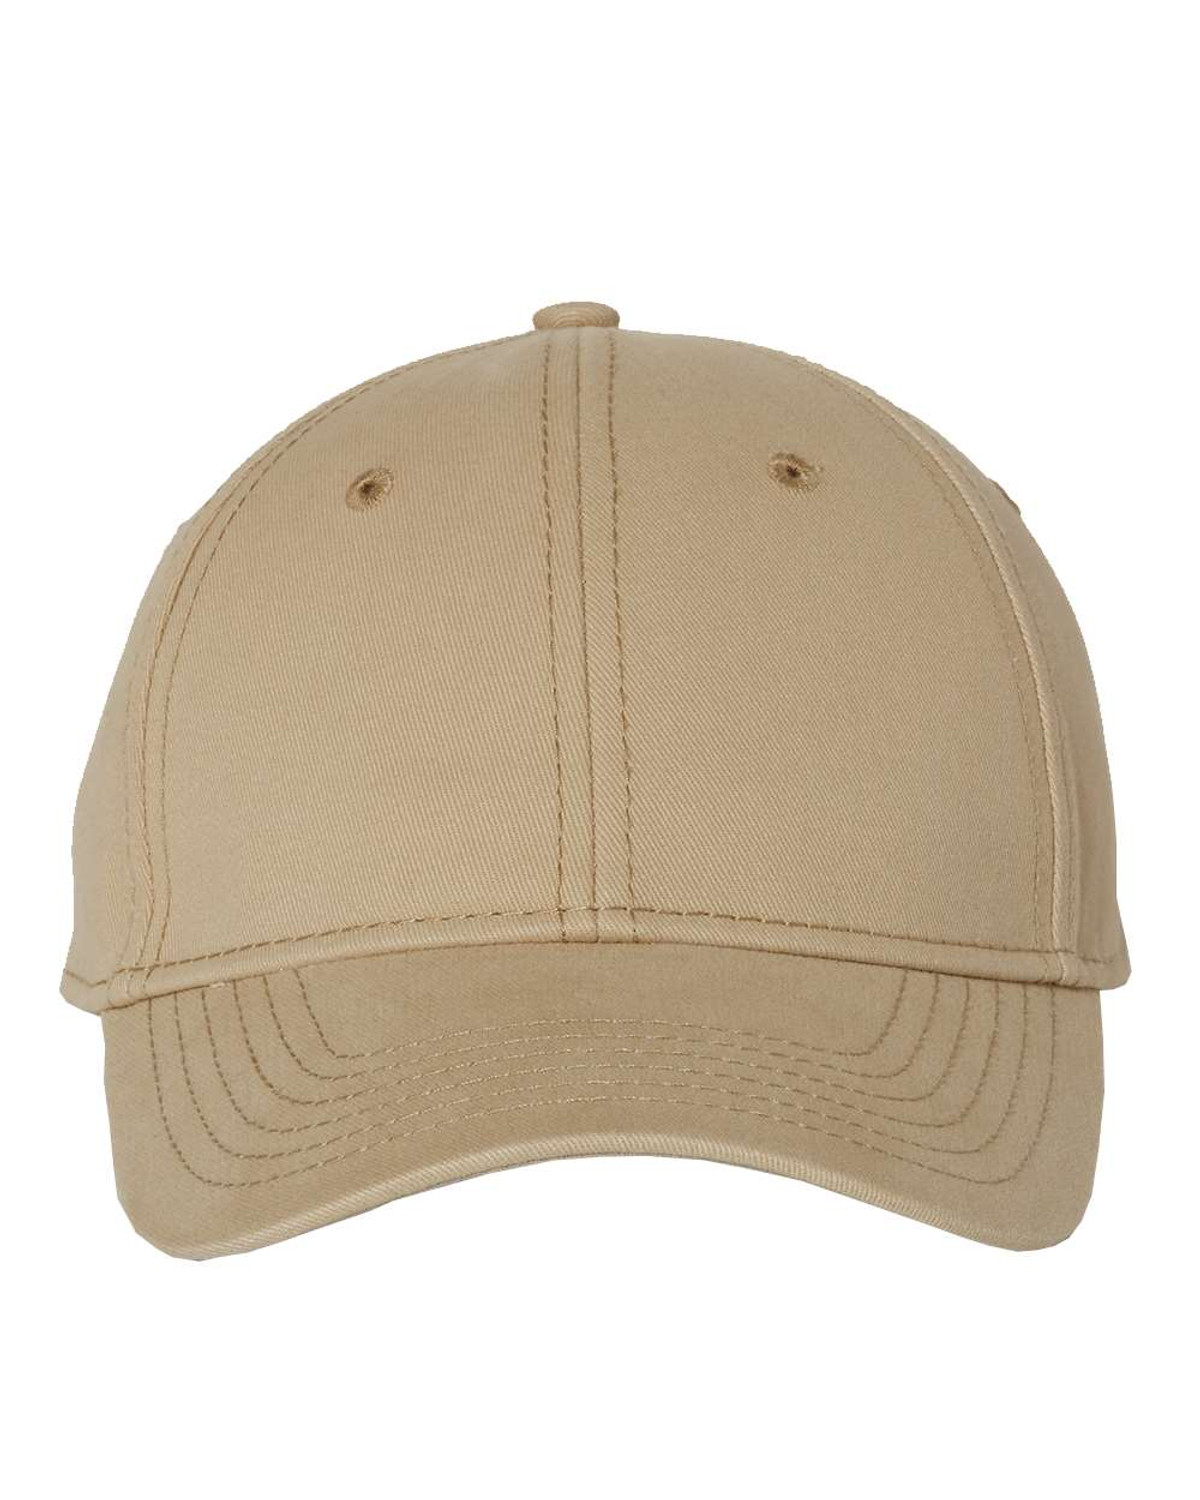 H&H Men's Basic Cricket Hat Khaki